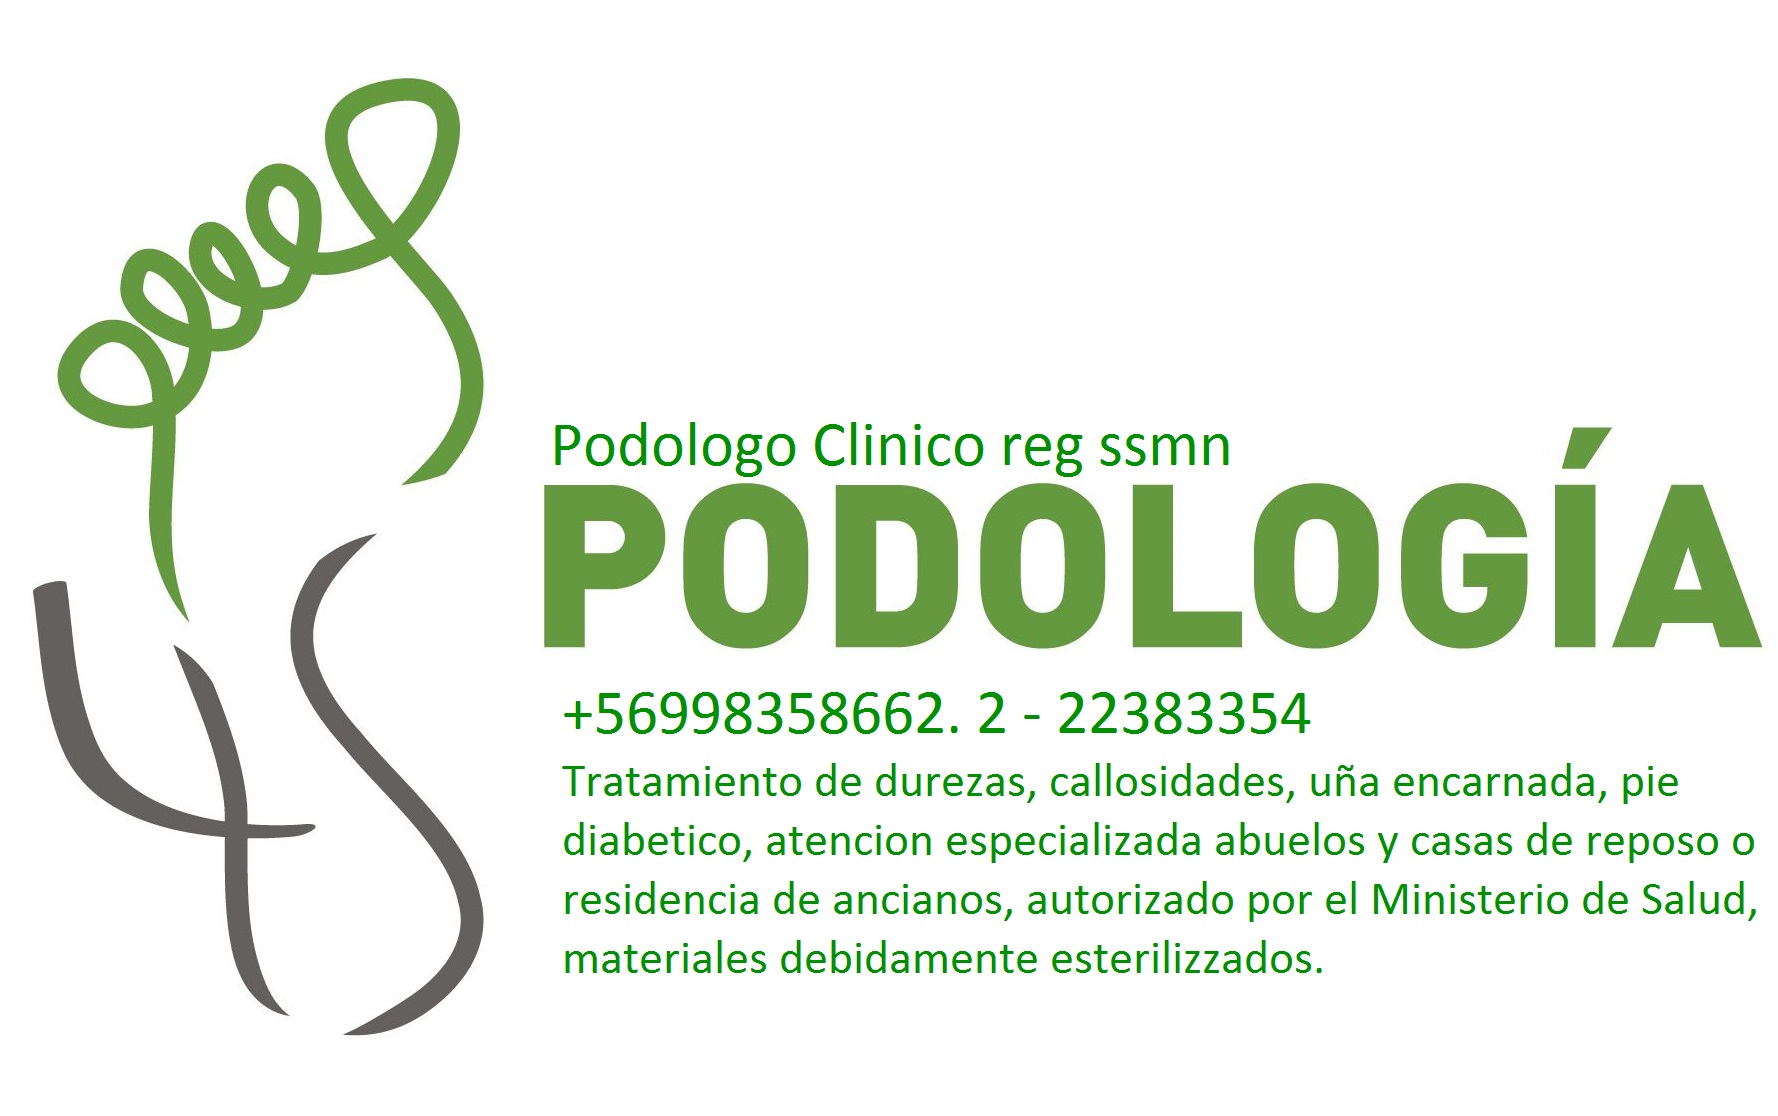 PODOLOGIA DOMICILIO Las Condes +56998358662